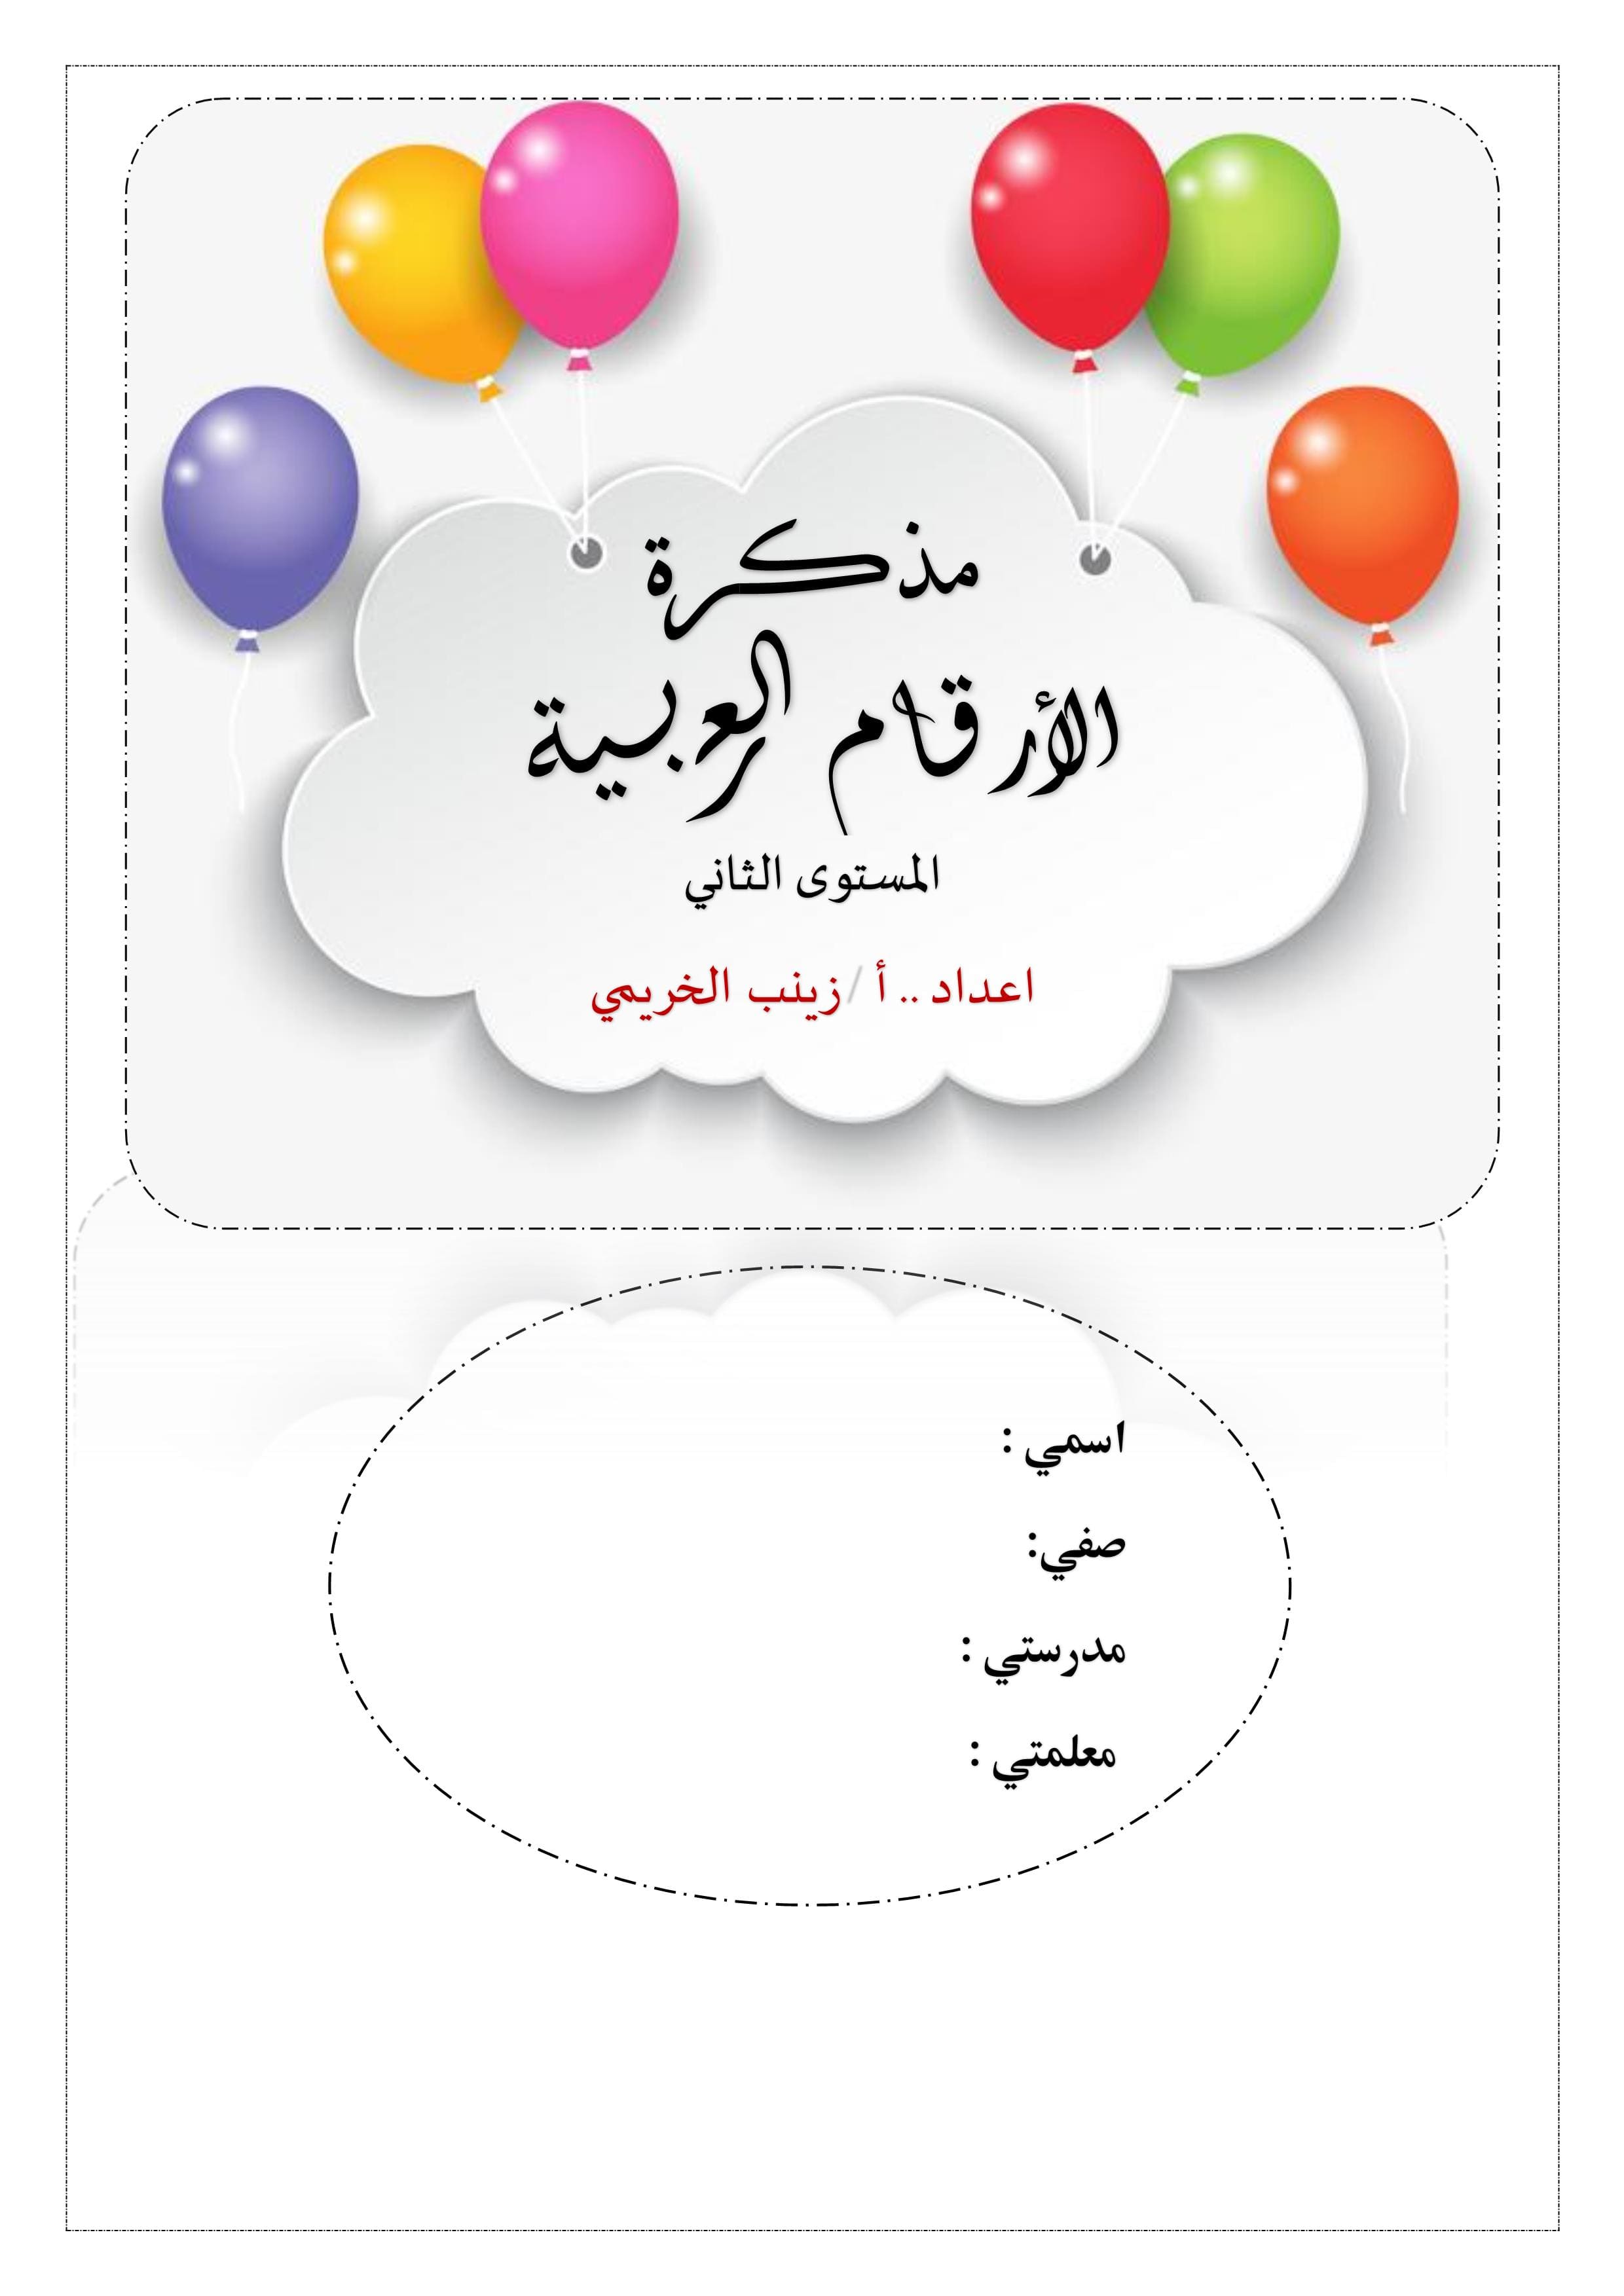 مذكرة كتابة الارقام العربية من 1 الى 10 لرياض الاطفال